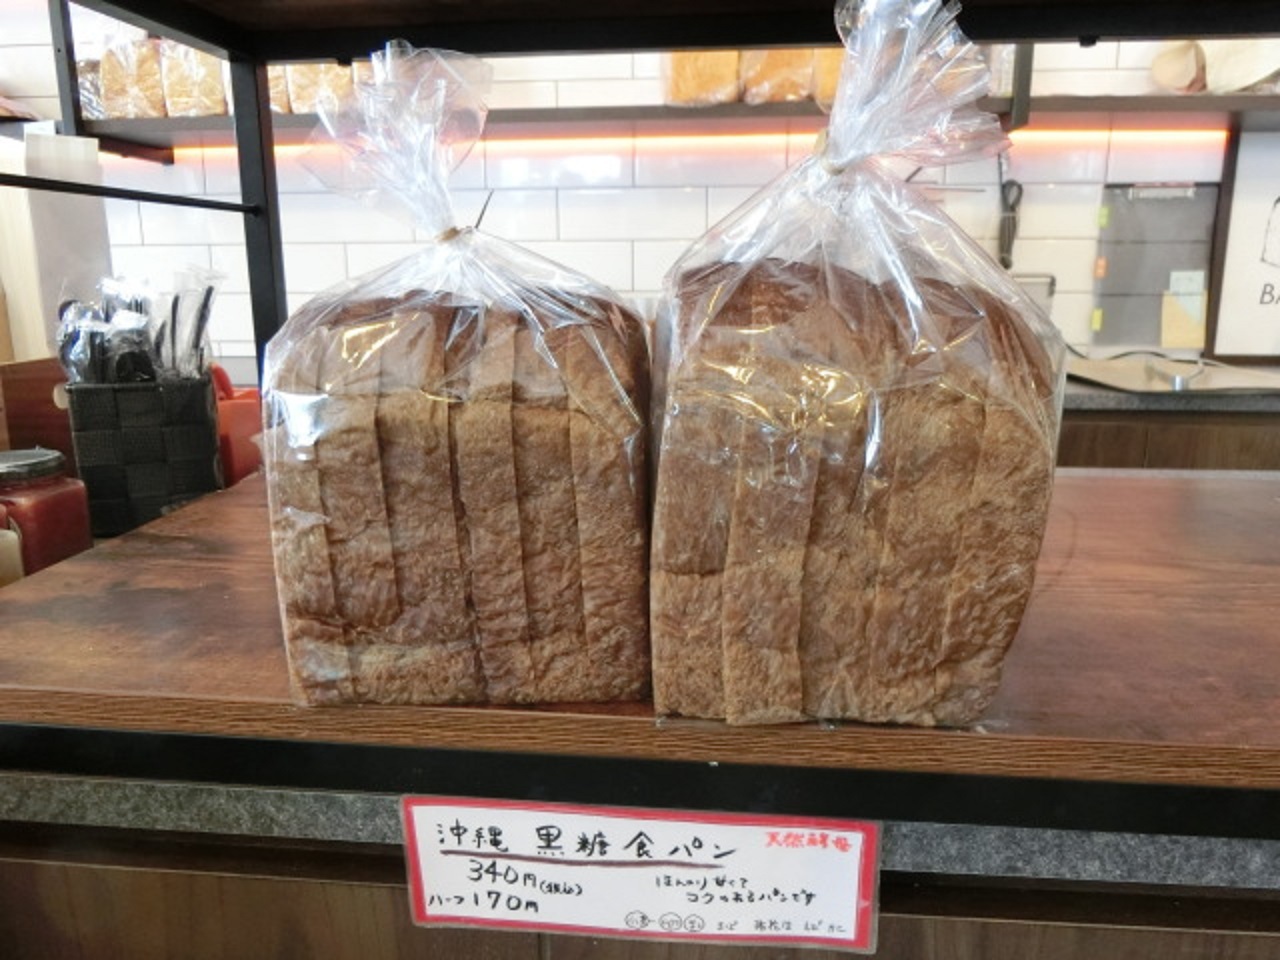 めちゃめちゃ気になる沖縄黒糖食パン、食べてみたいです